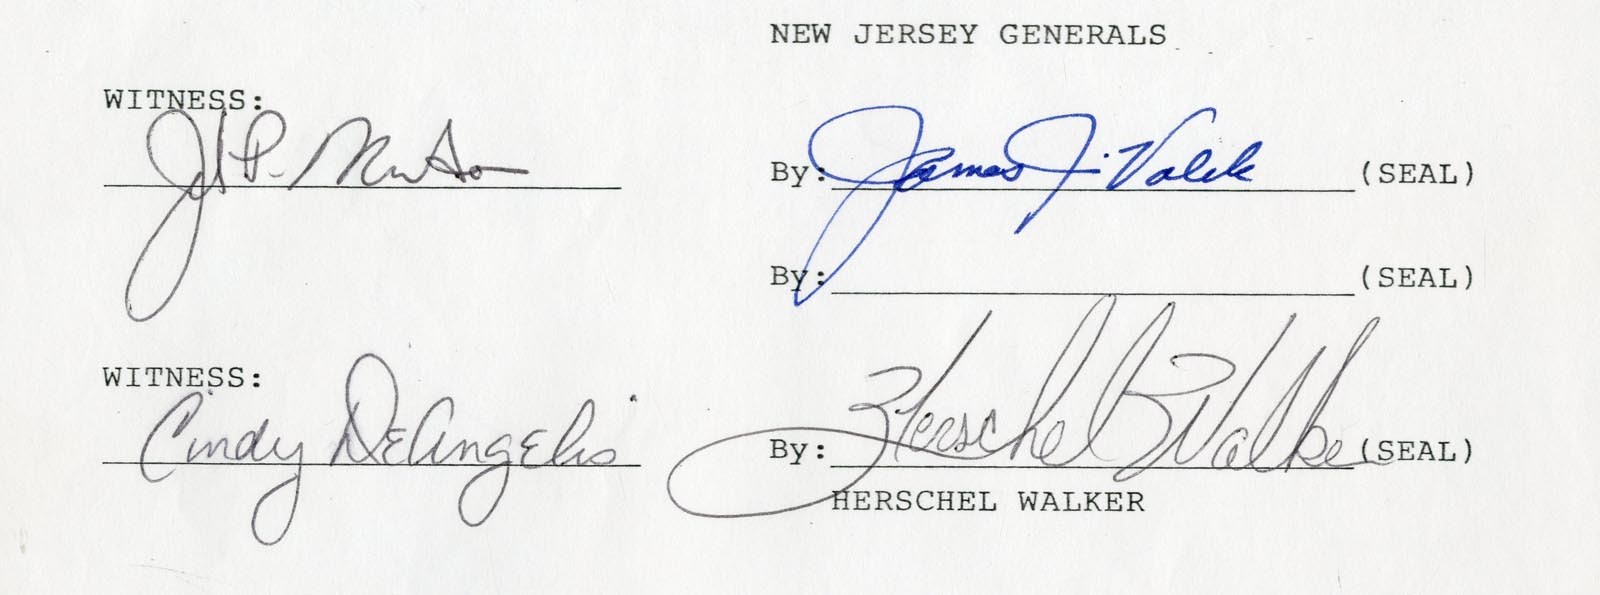 Football - 1983 Herschel Walker New Jersey Generals Signed Contract